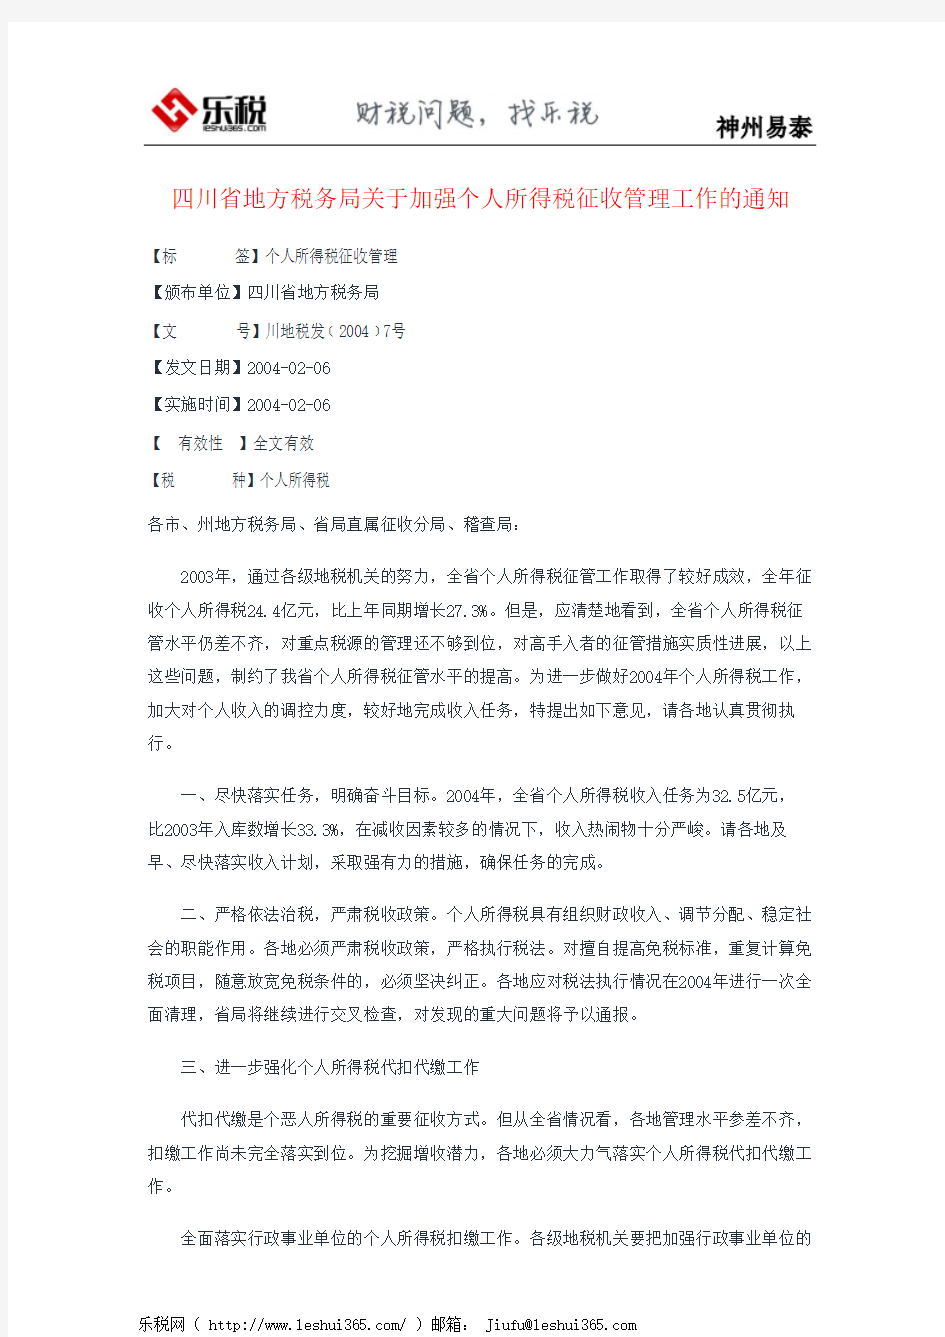 四川省地方税务局关于加强个人所得税征收管理工作的通知